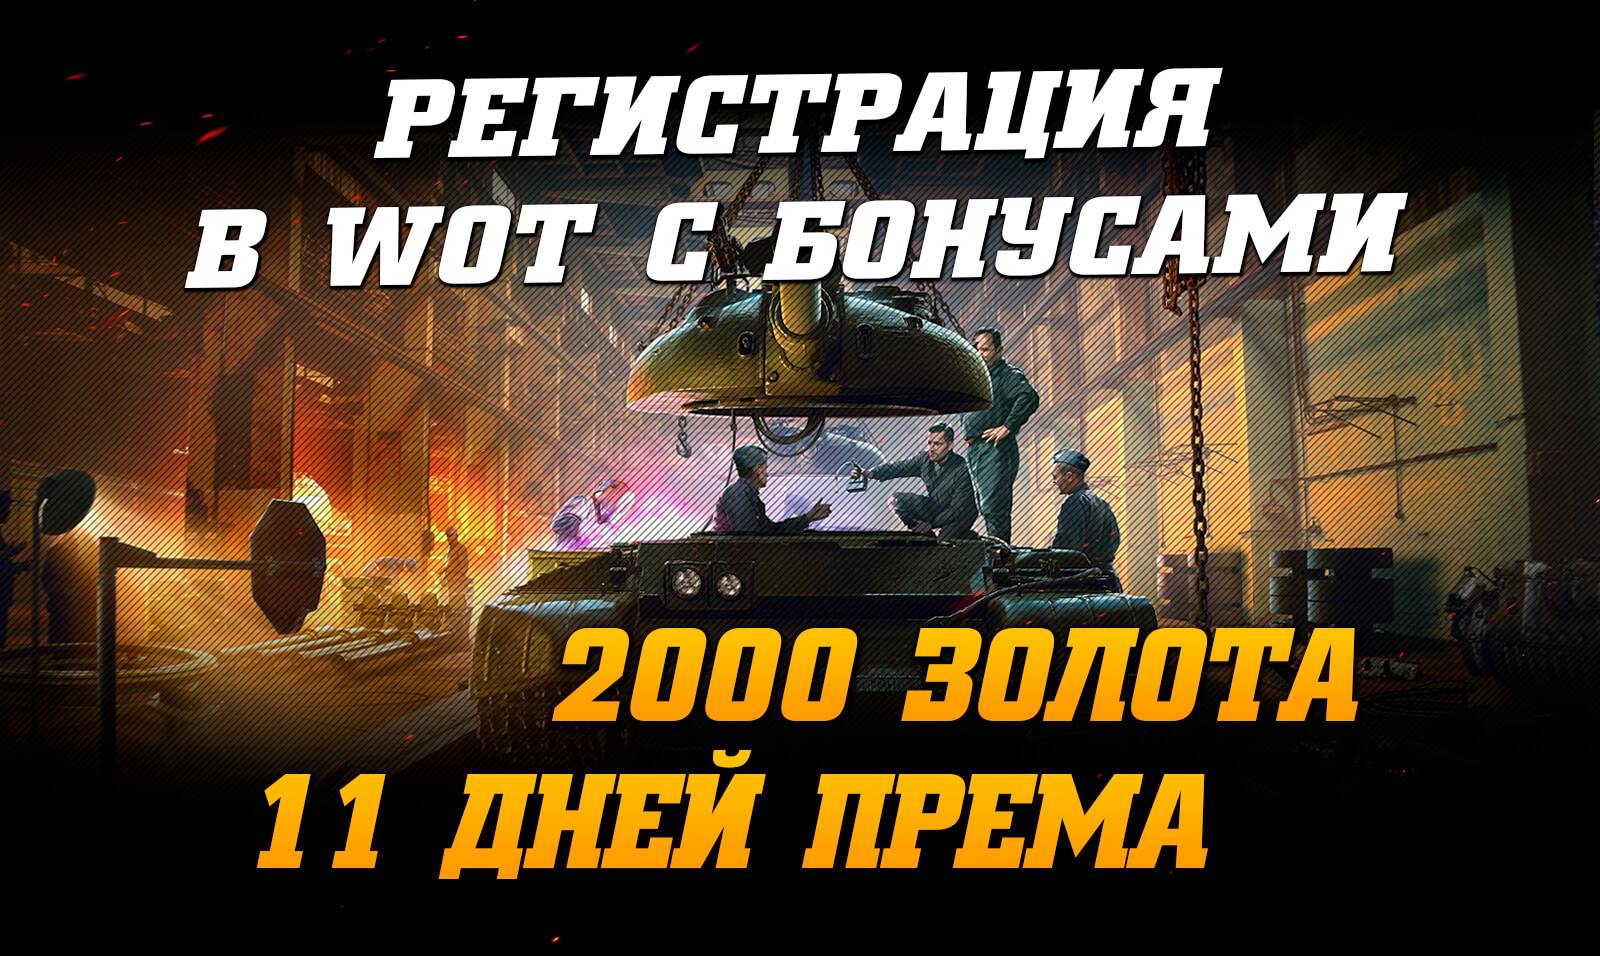 Змінено: 01-07-2019   шлях:   Новини World of Tanks   Реєстрація в WoT з бонусами (2000 голди і 11 днів П А)